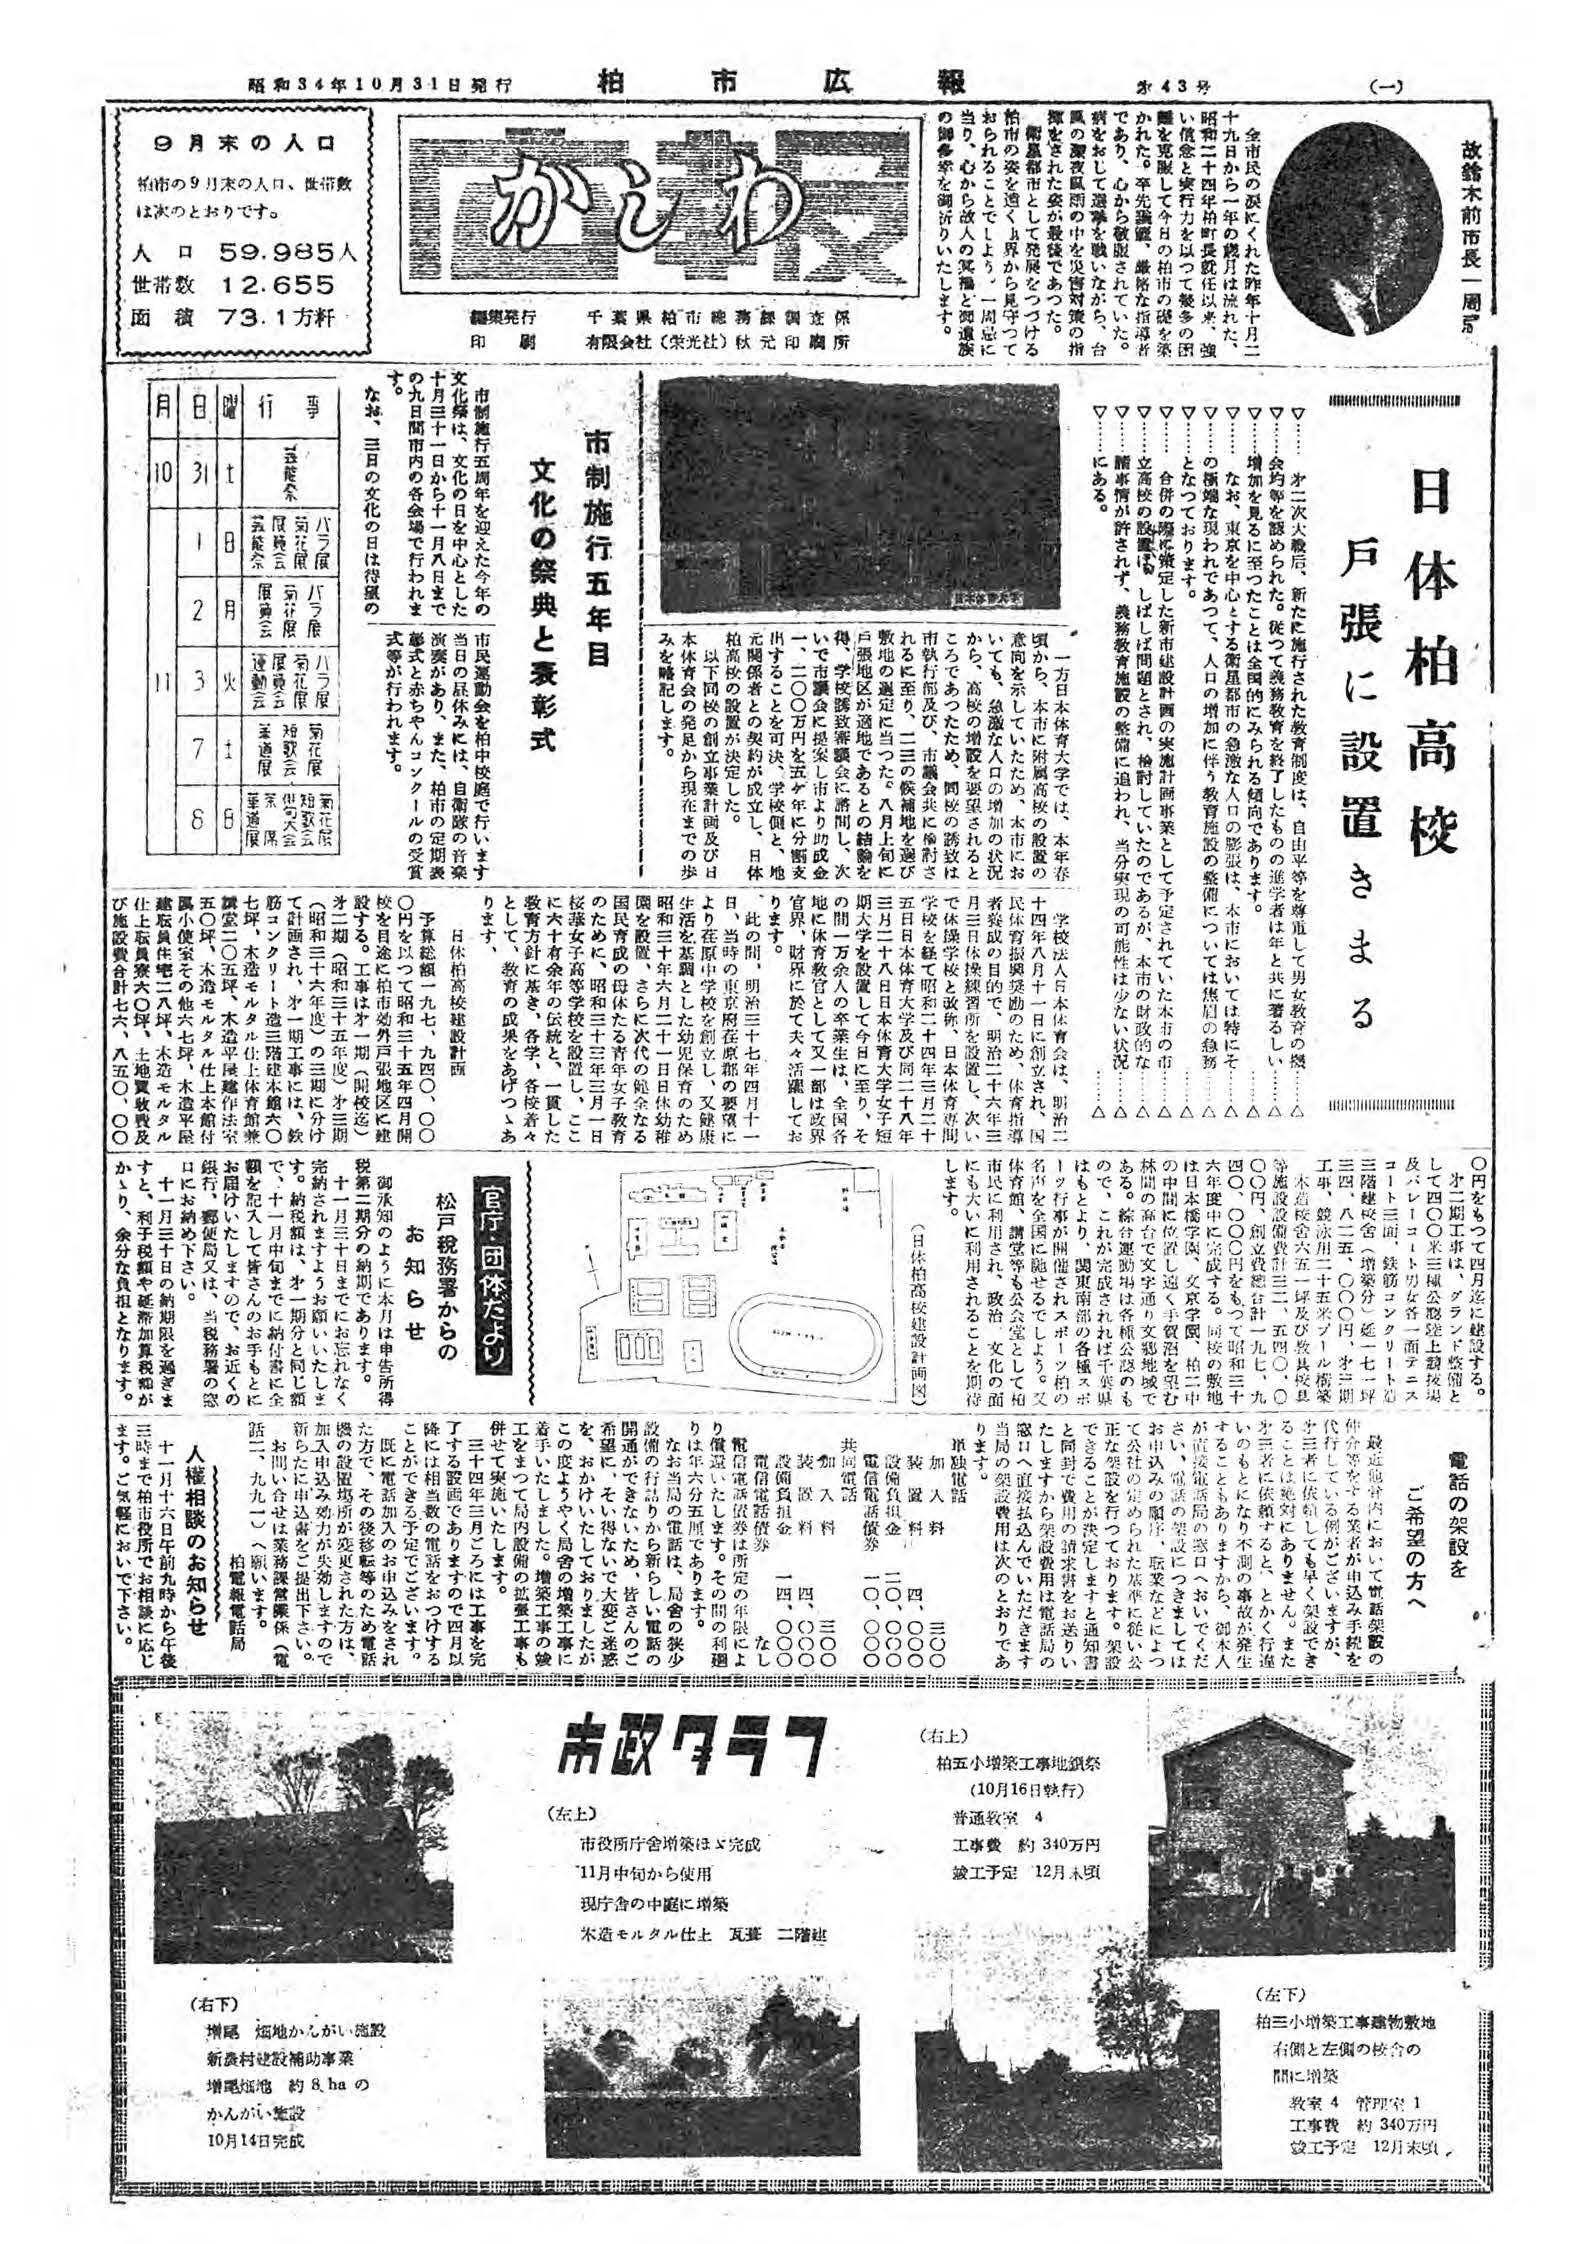 広報かしわ　昭和34年10月31日発行　43号